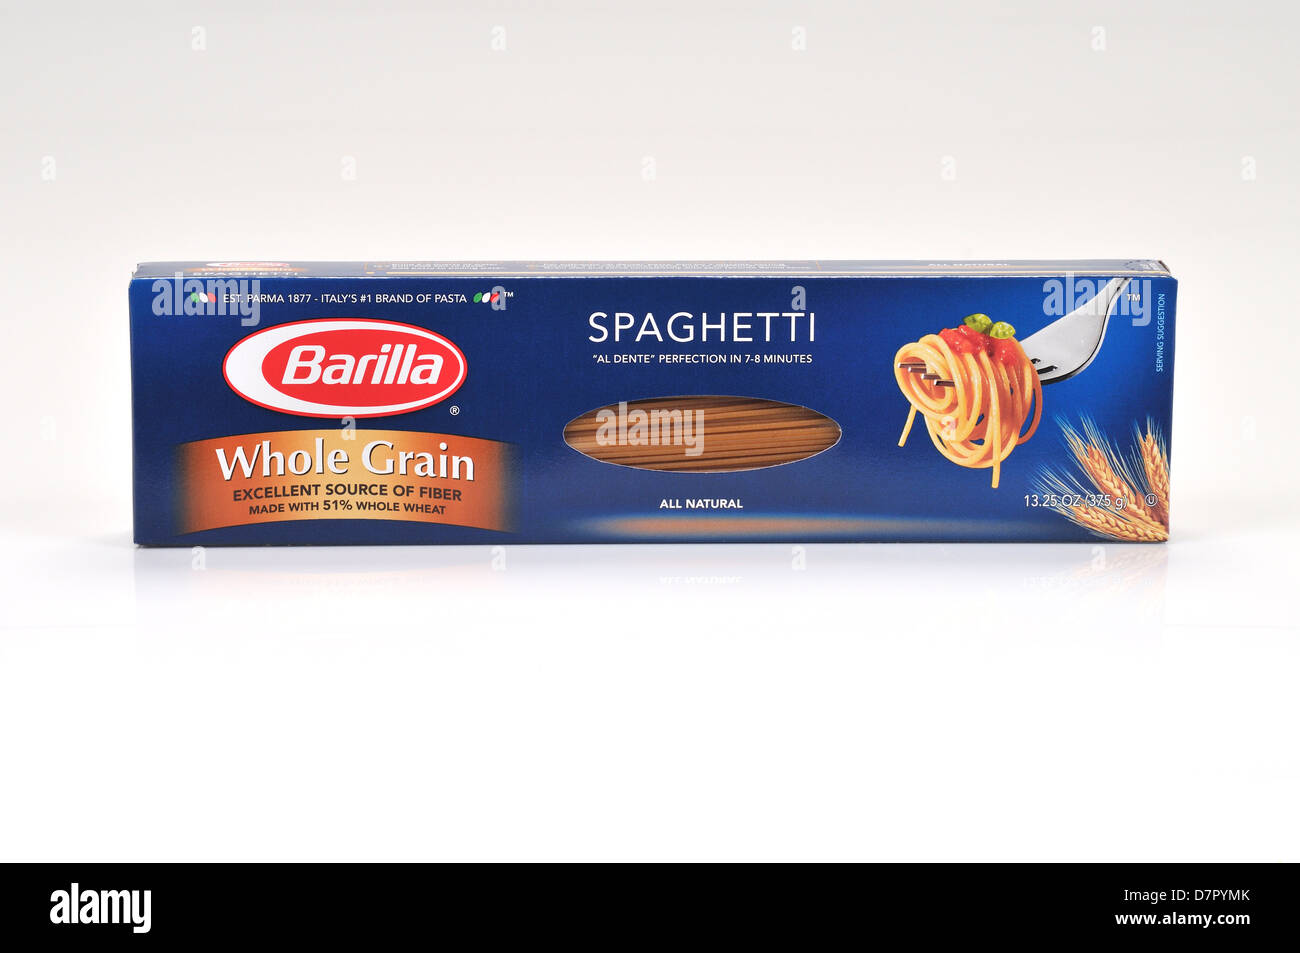 Boîte non ouverte de grains entiers pâtes spaghetti Barilla sur fond blanc, découpe. USA Banque D'Images